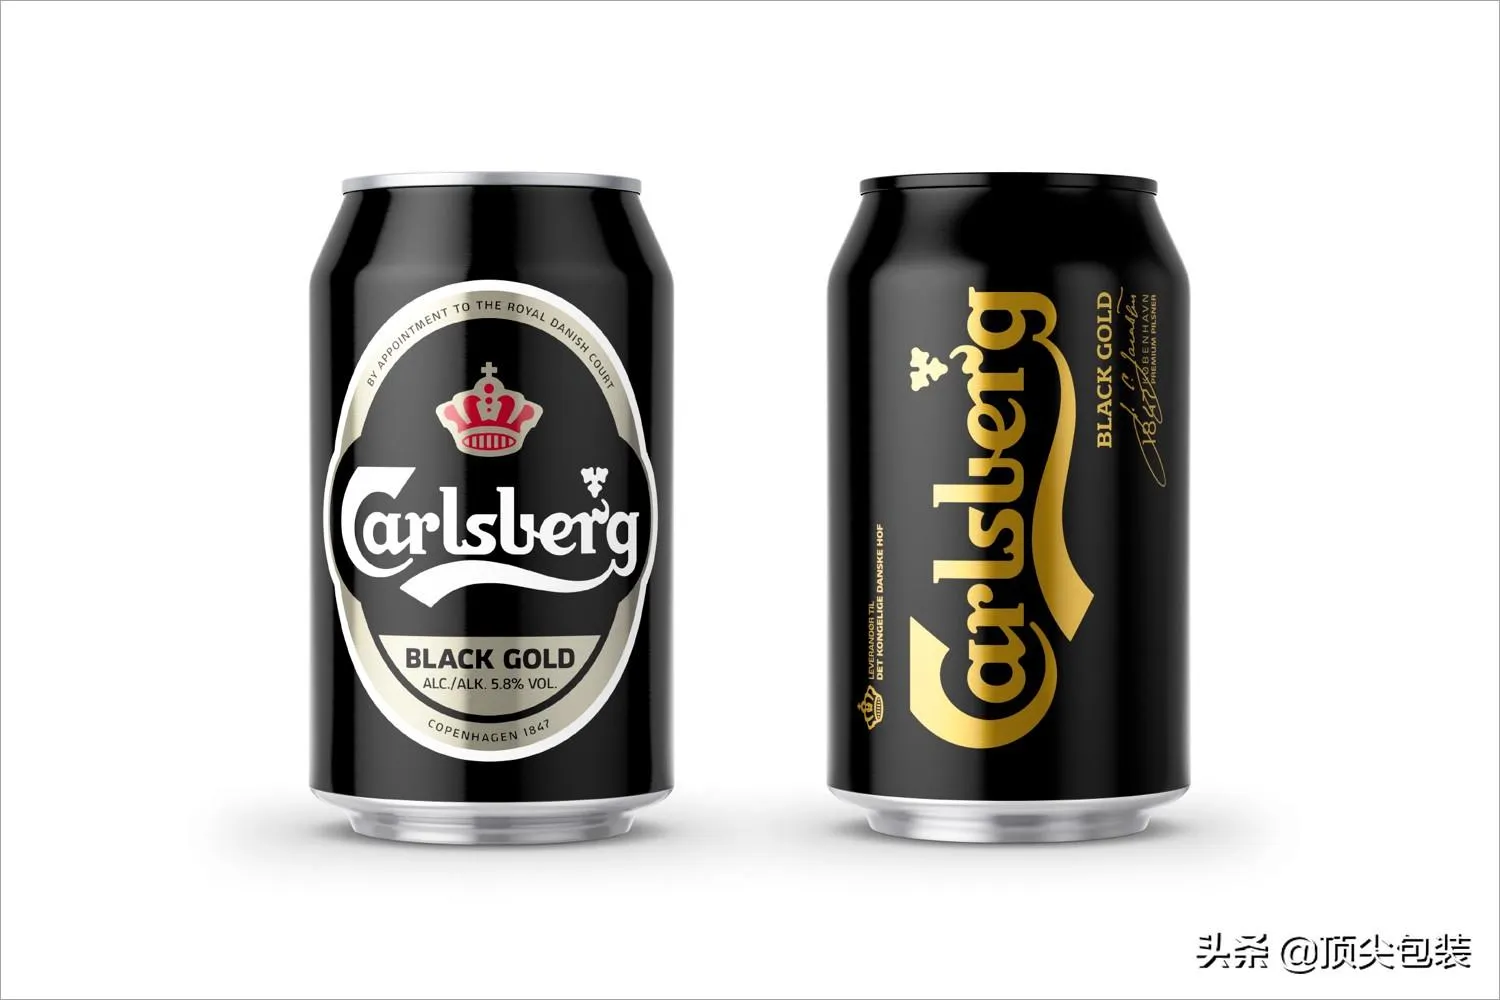 嘉士伯啤酒是哪个国家的品牌 | 丹麦啤酒牌子嘉士伯介绍